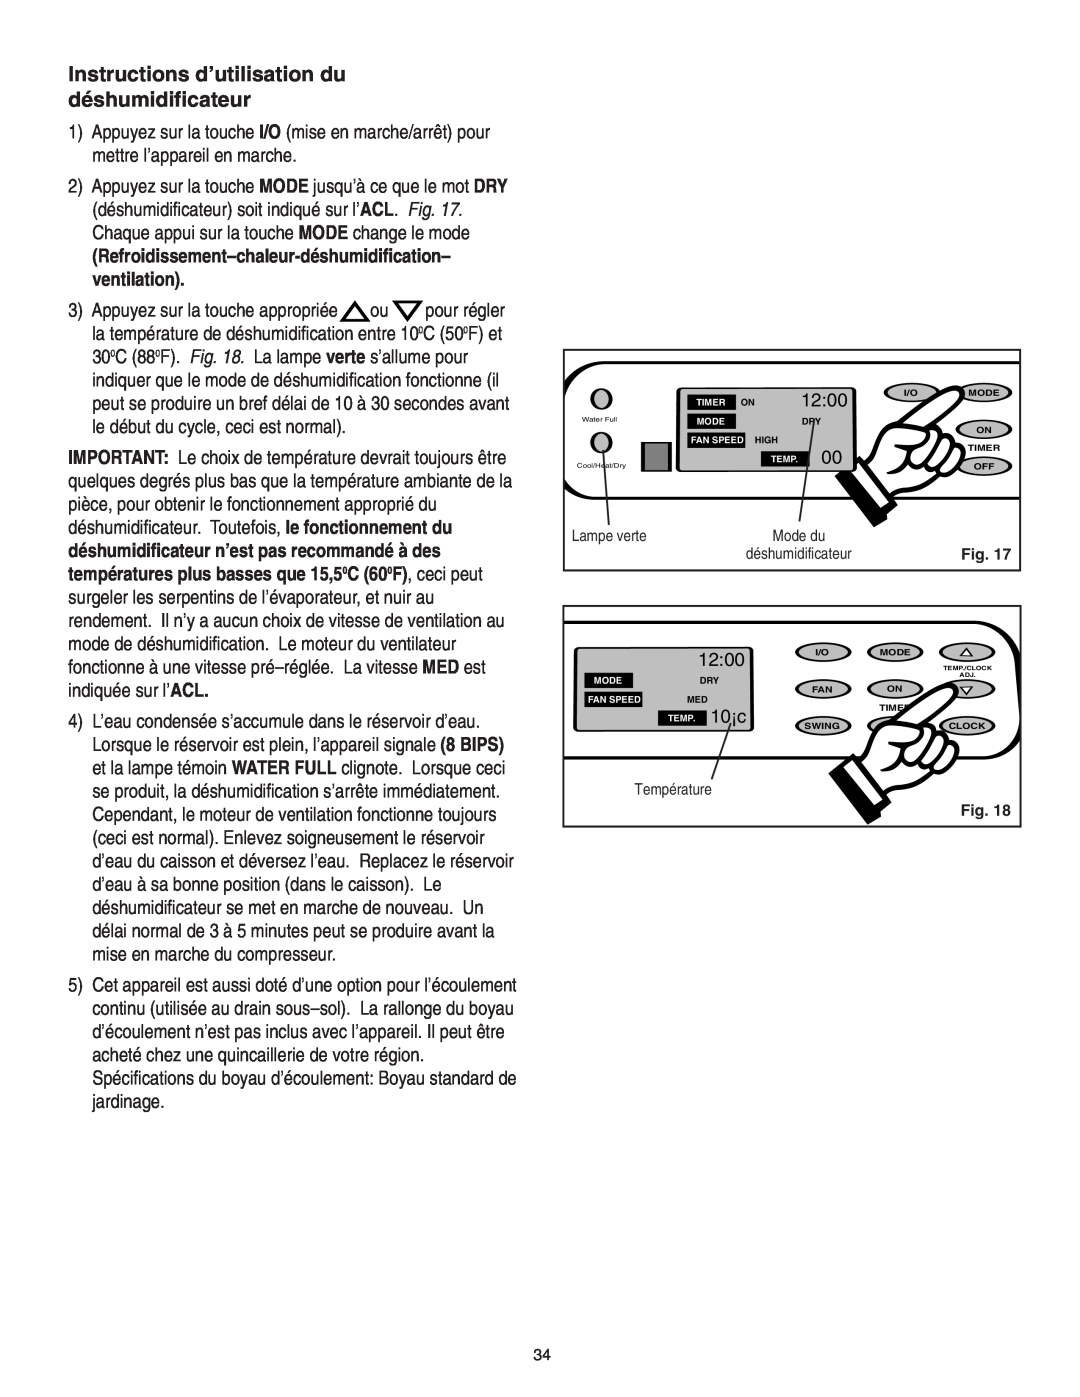 Danby SPAC8499 manual Instructions d’utilisation du déshumidificateur, 10¡c, Mode du, Fig, Température 